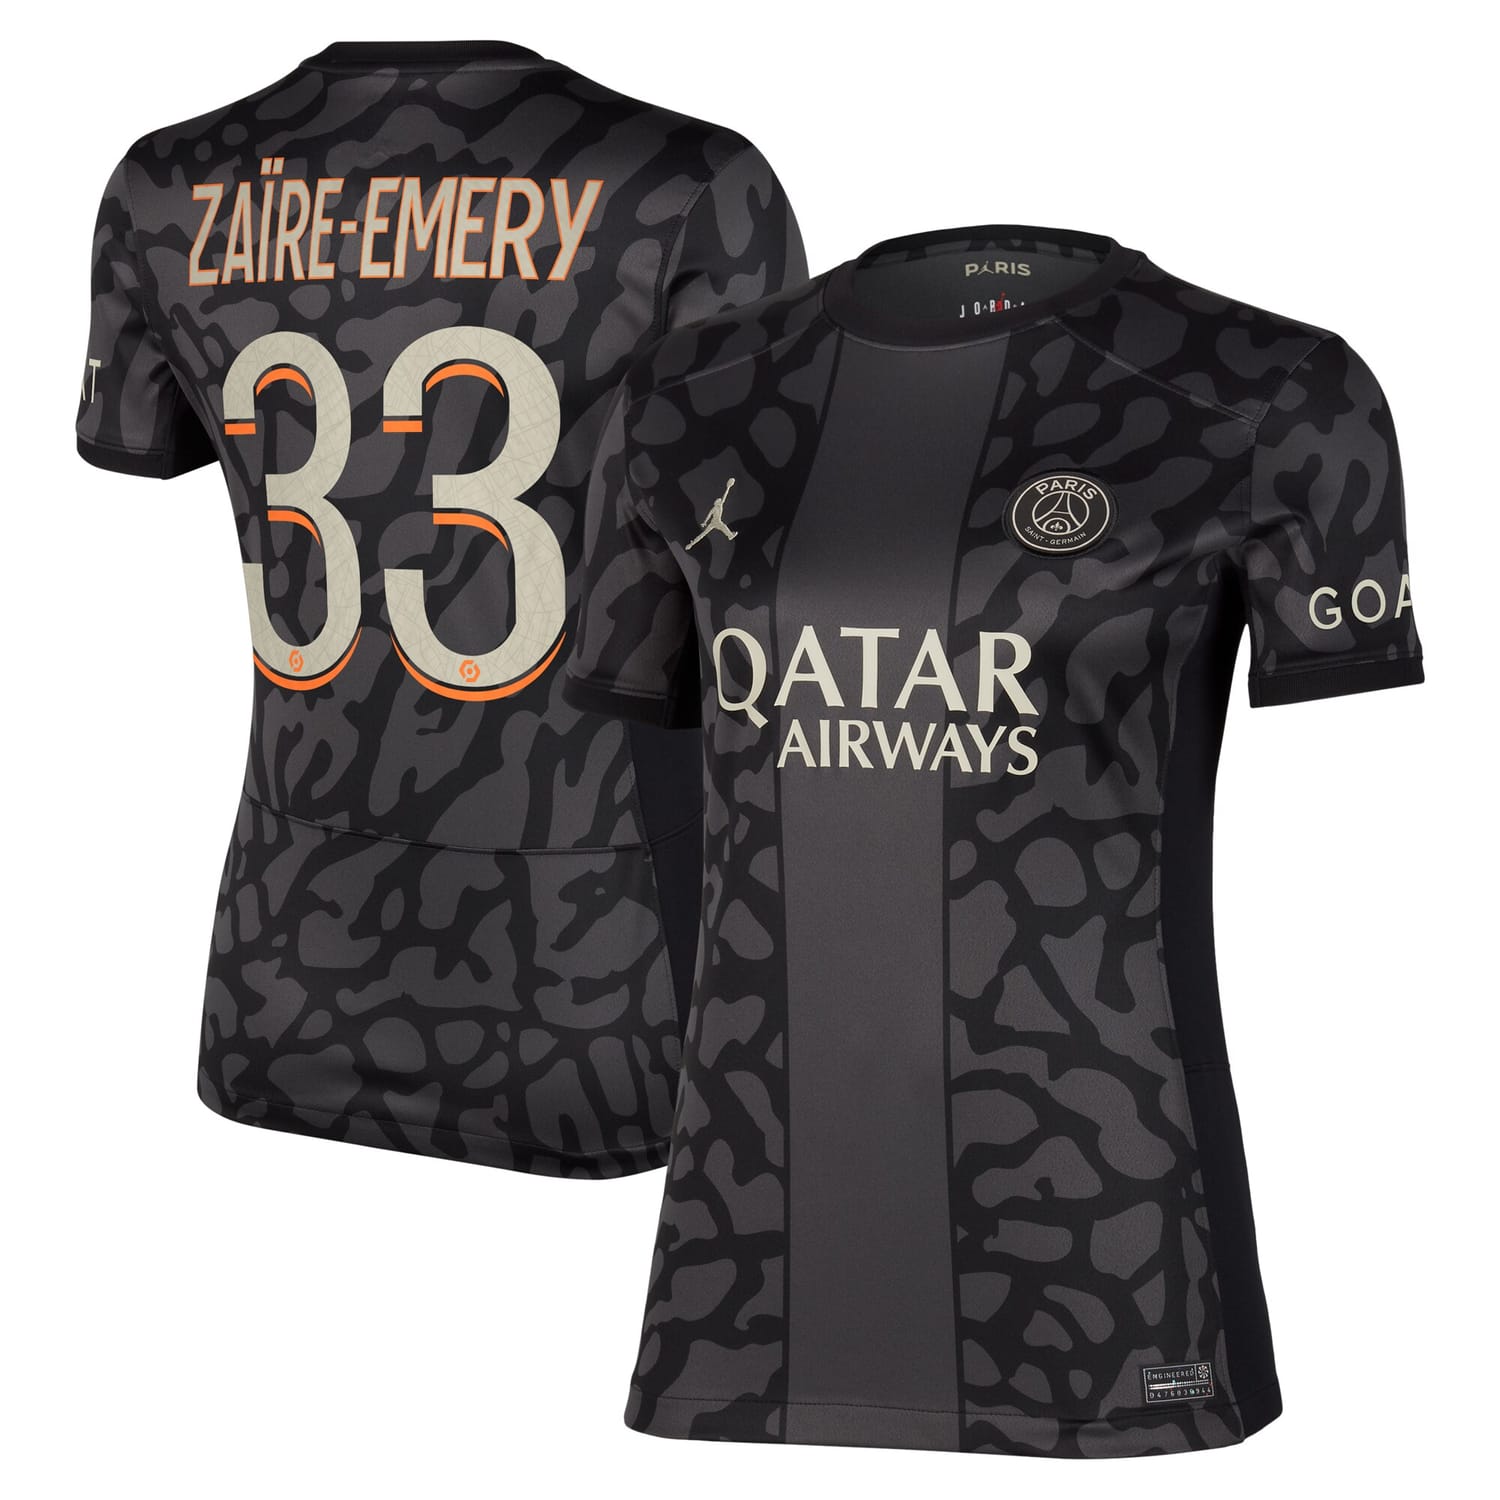 Ligue 1 Paris Saint-Germain Third Jersey Shirt 2023-24 player Warren Zaïre-Emery 33 printing for Women